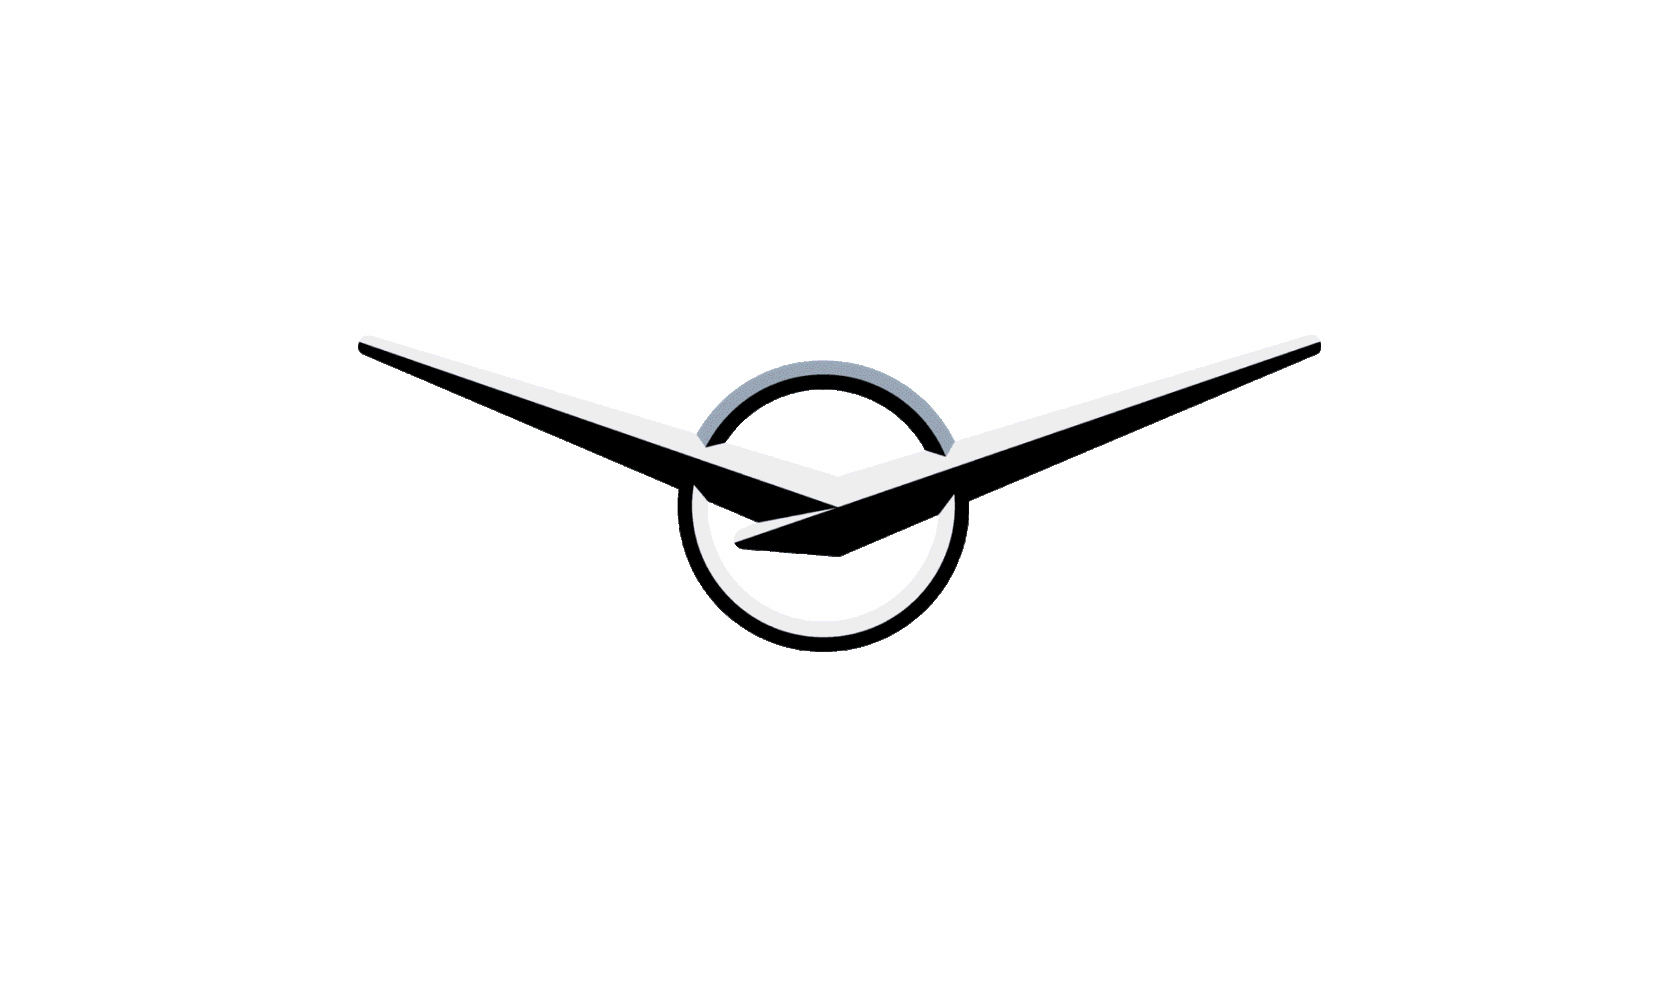 Что символизирует логотип уаз ответ стрелки часов. Значок марки УАЗ. Значок УАЗ Патриот. Логотип УАЗ 469. Значок УАЗ вектор.